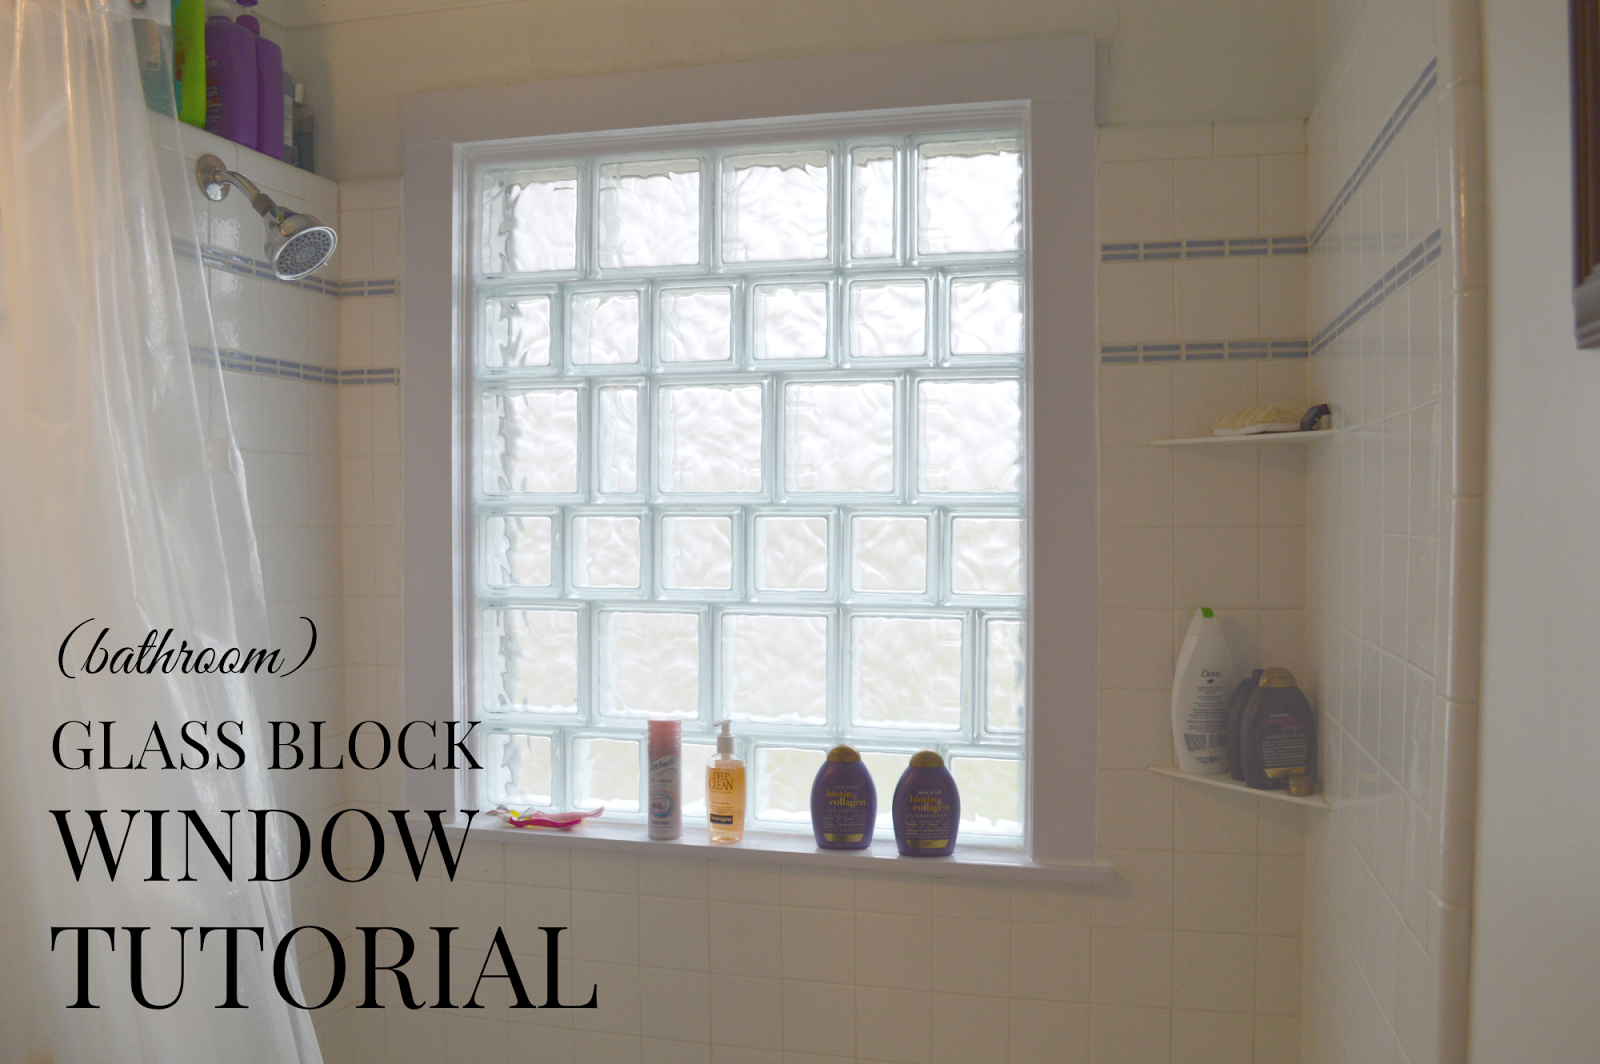 Glass Block Window A Semi Tutorial, Bathroom Window Glass Block